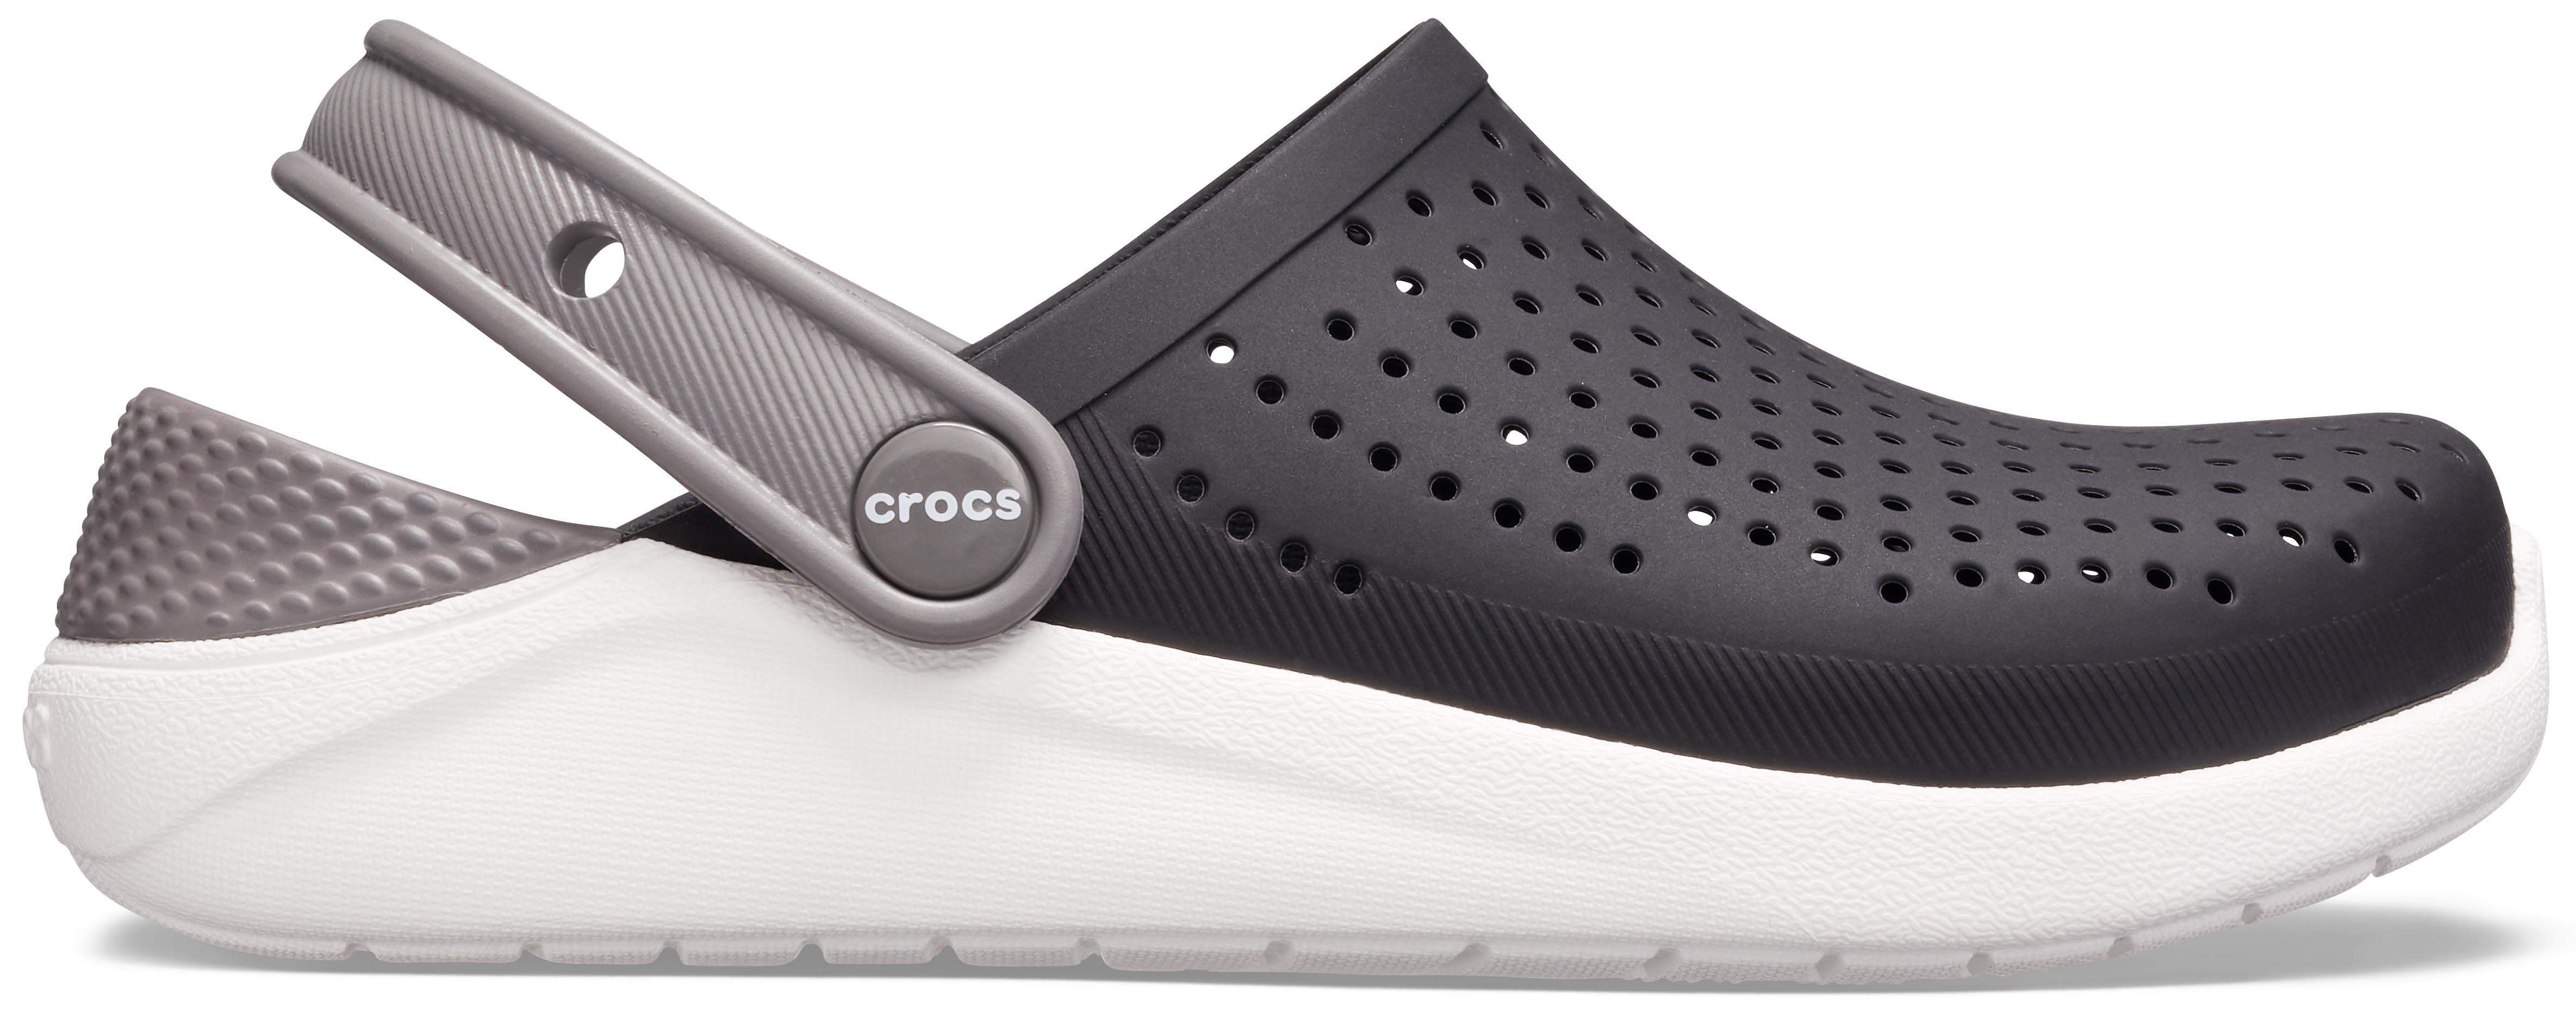 crocs white size 4